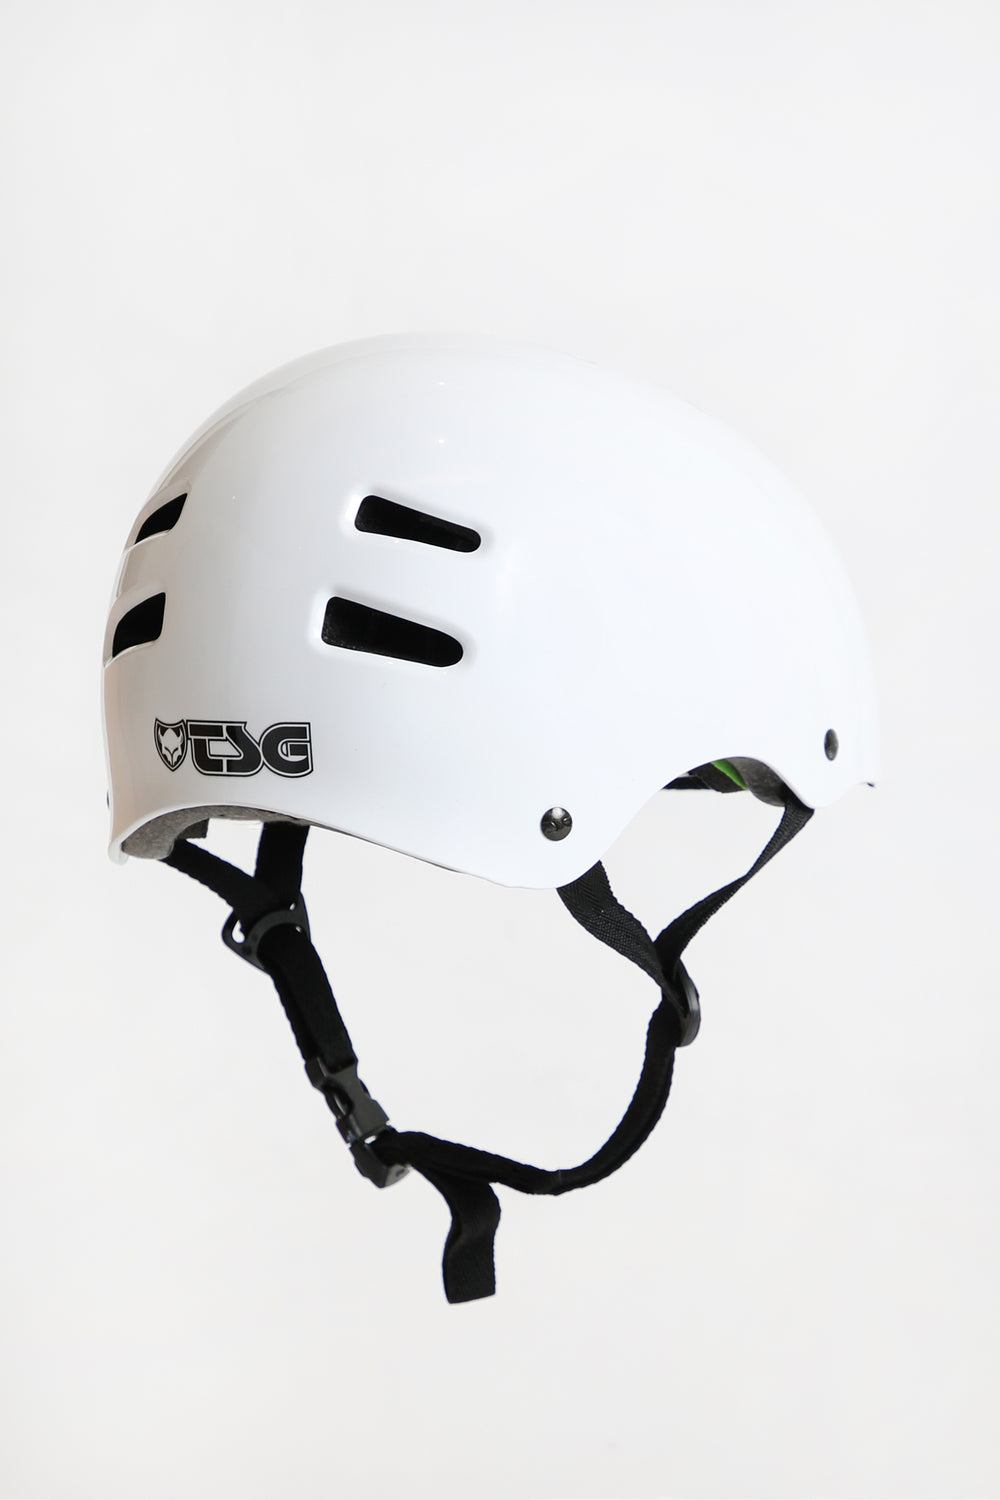 TSG Skate Helmet TSG Skate Helmet